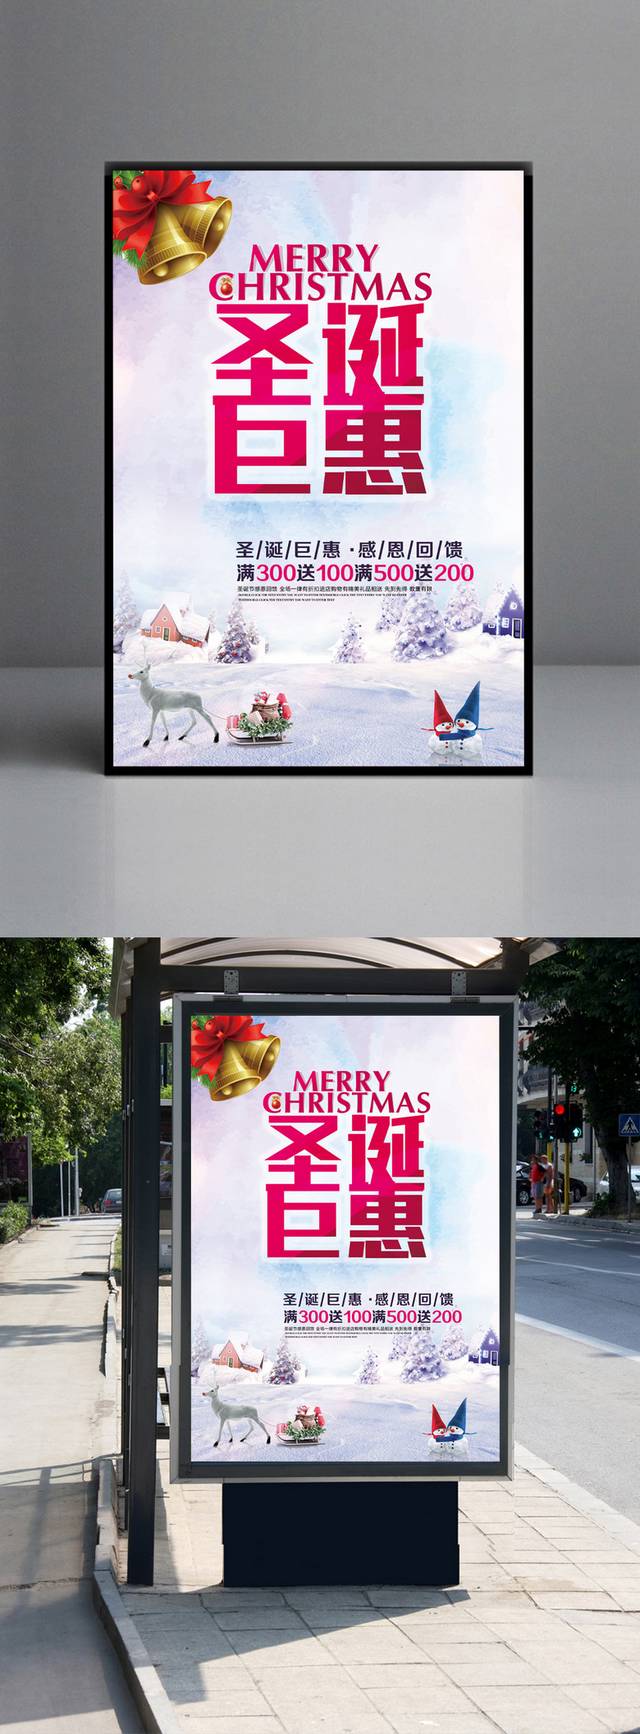 简约大气圣诞节海报模板